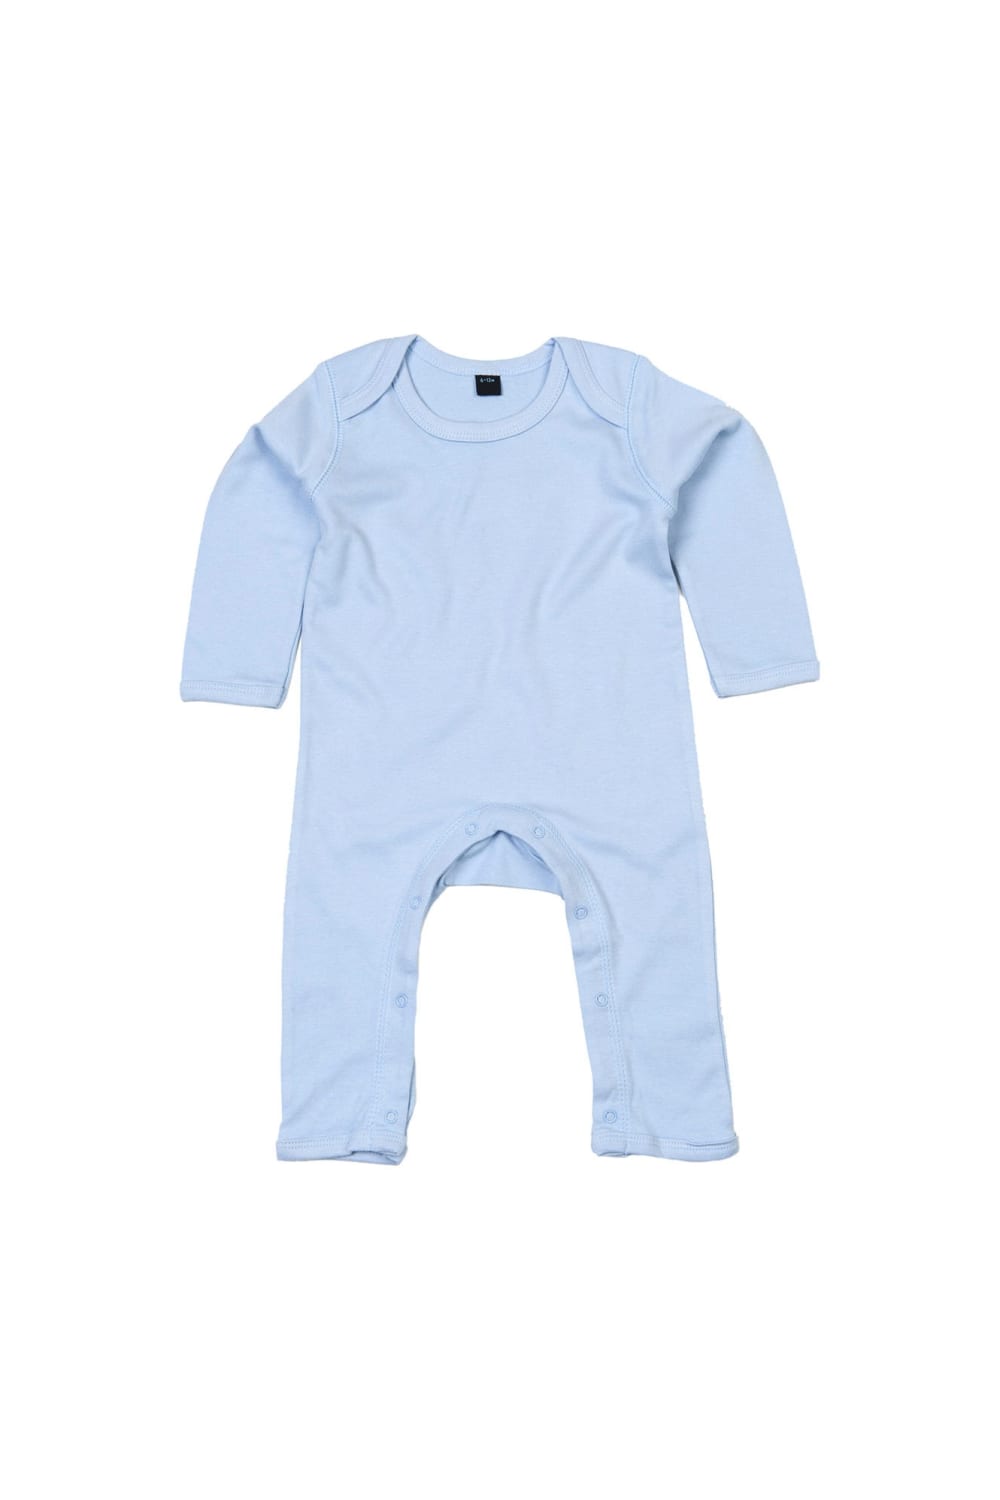 Babybugz Unisex Baby Long Sleeved Rompersuit (Dusty Blue)